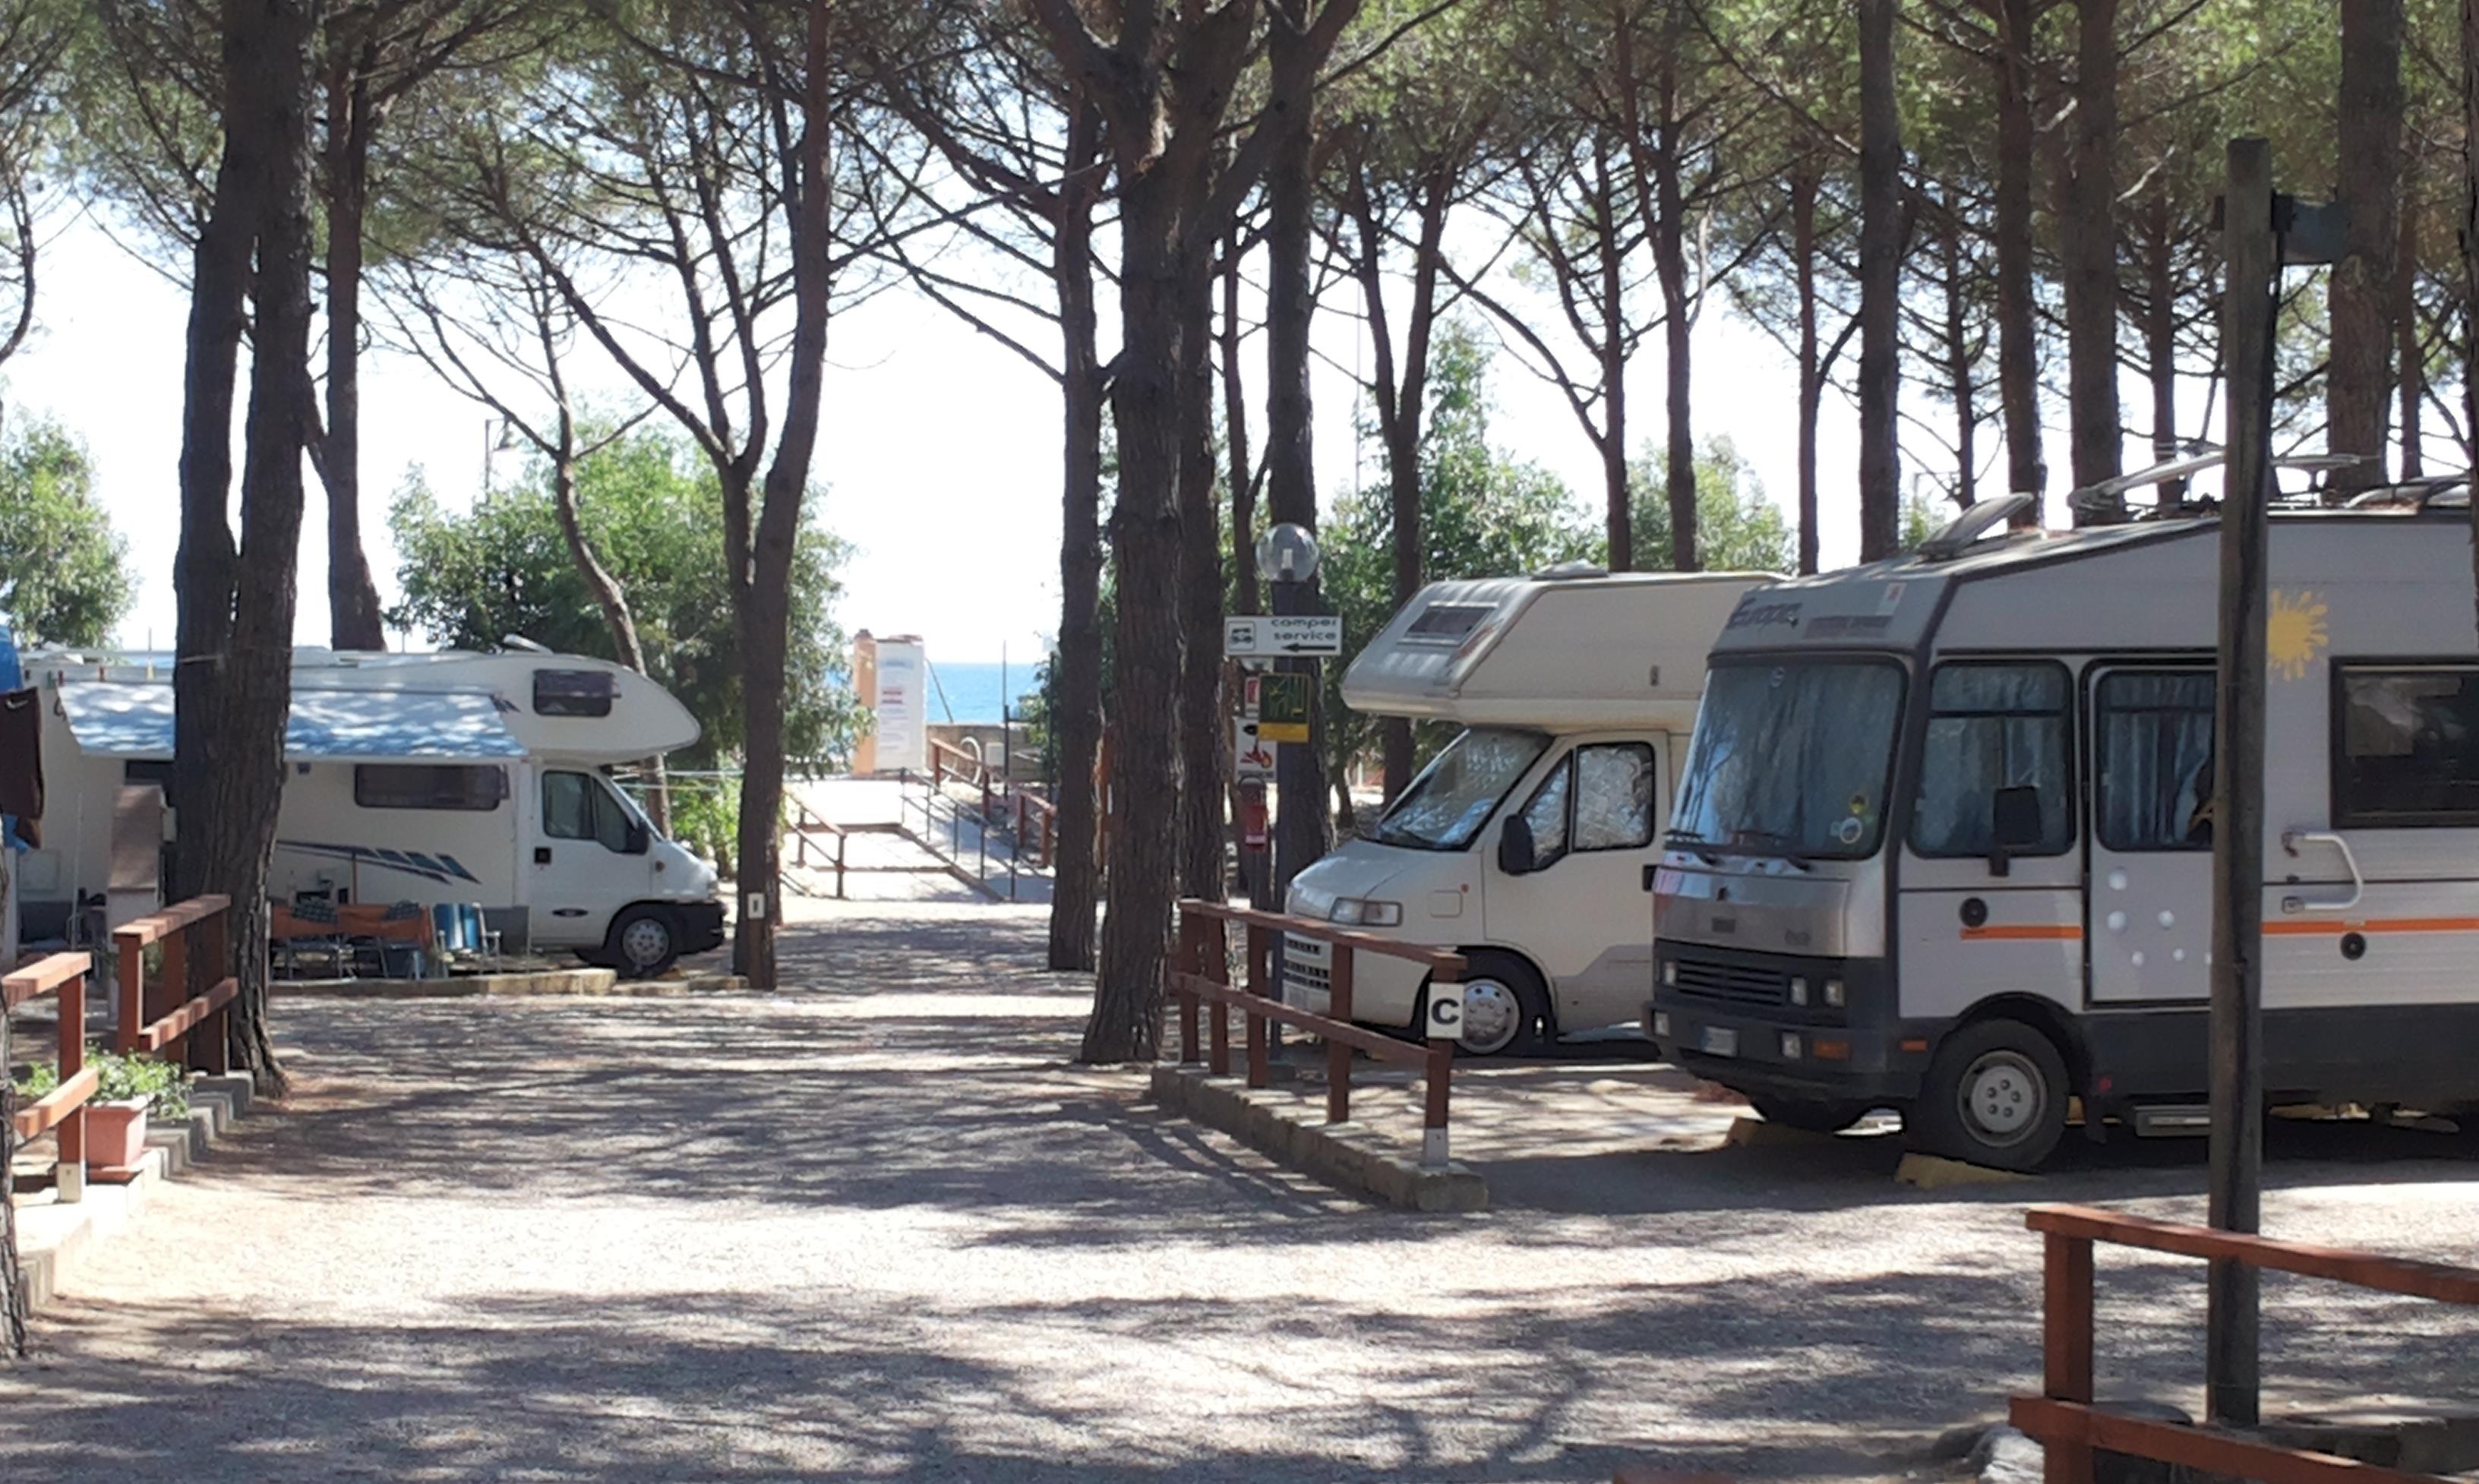 Emplacement Pour Caravane Et Camping Car